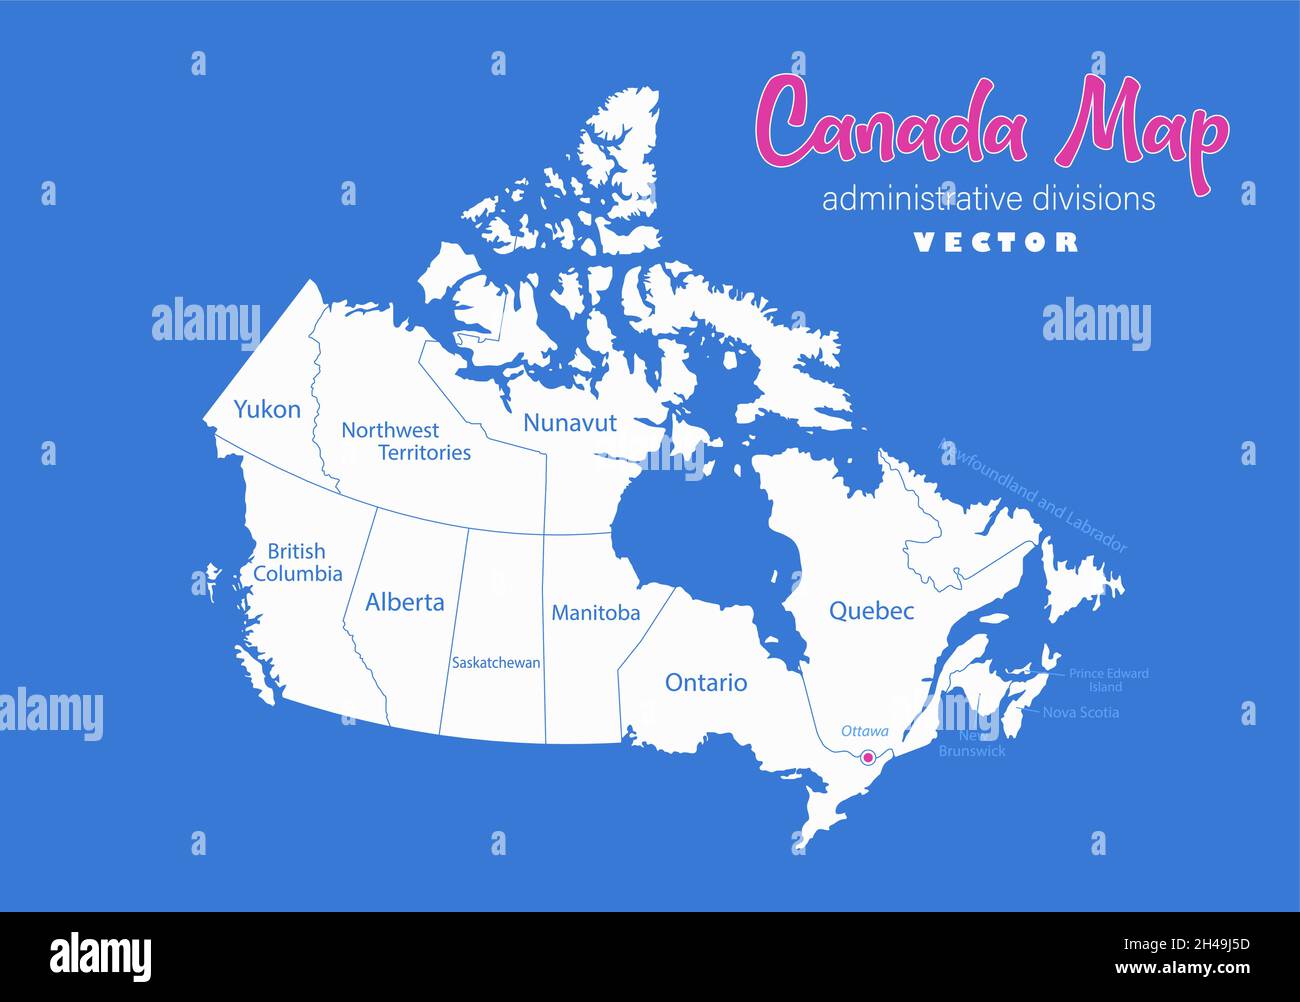 Mapa de Canadá, divisiones administrativas con nombres de regiones, vector de fondo azul Ilustración del Vector